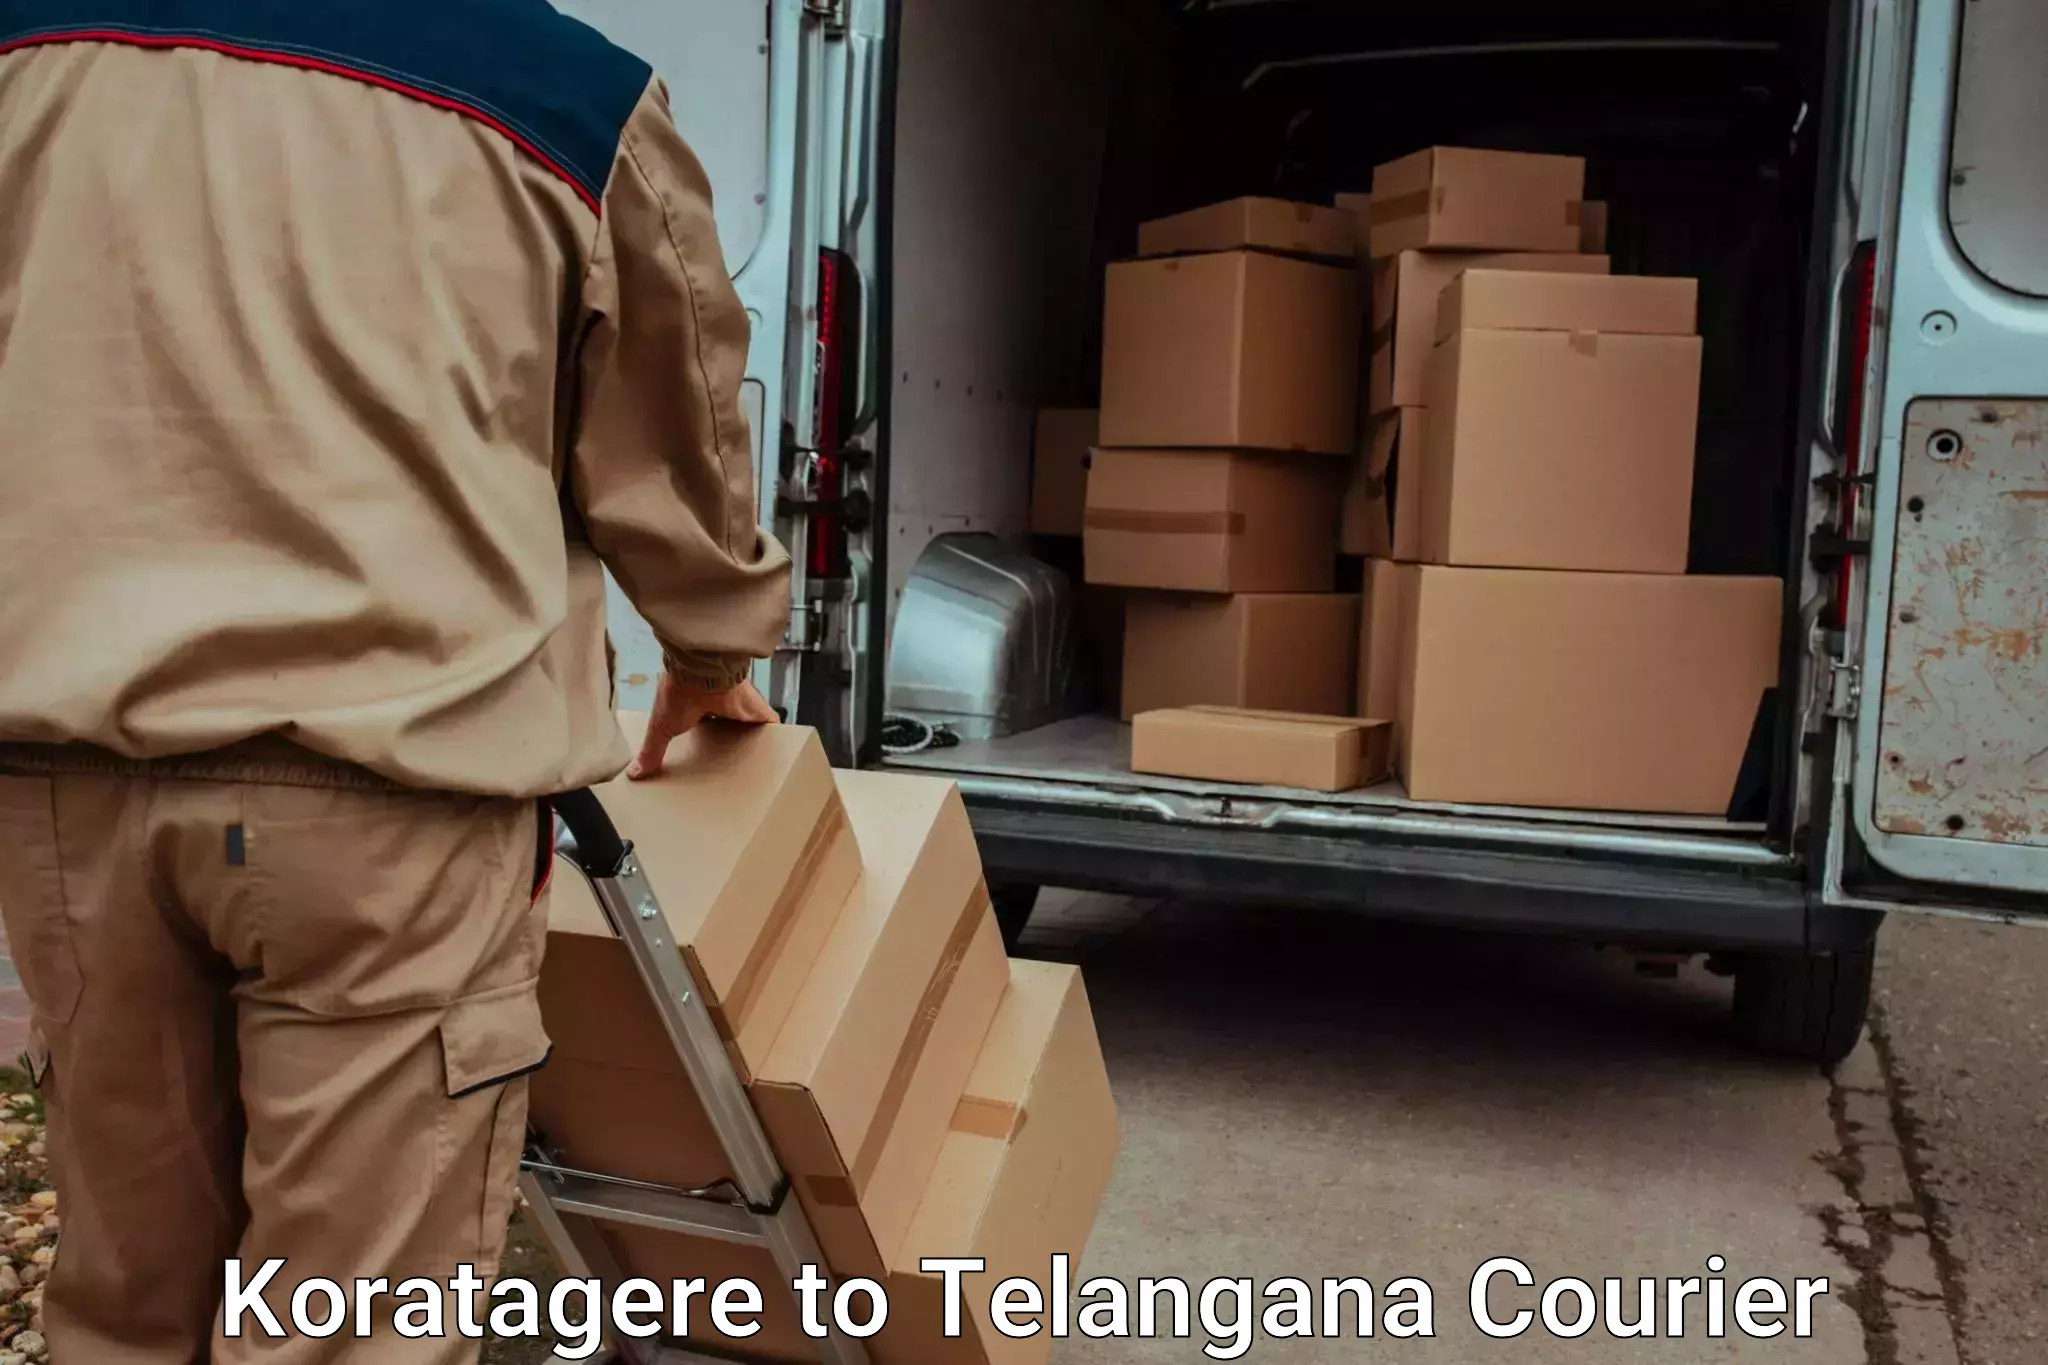 Furniture transport experts Koratagere to Mudigonda